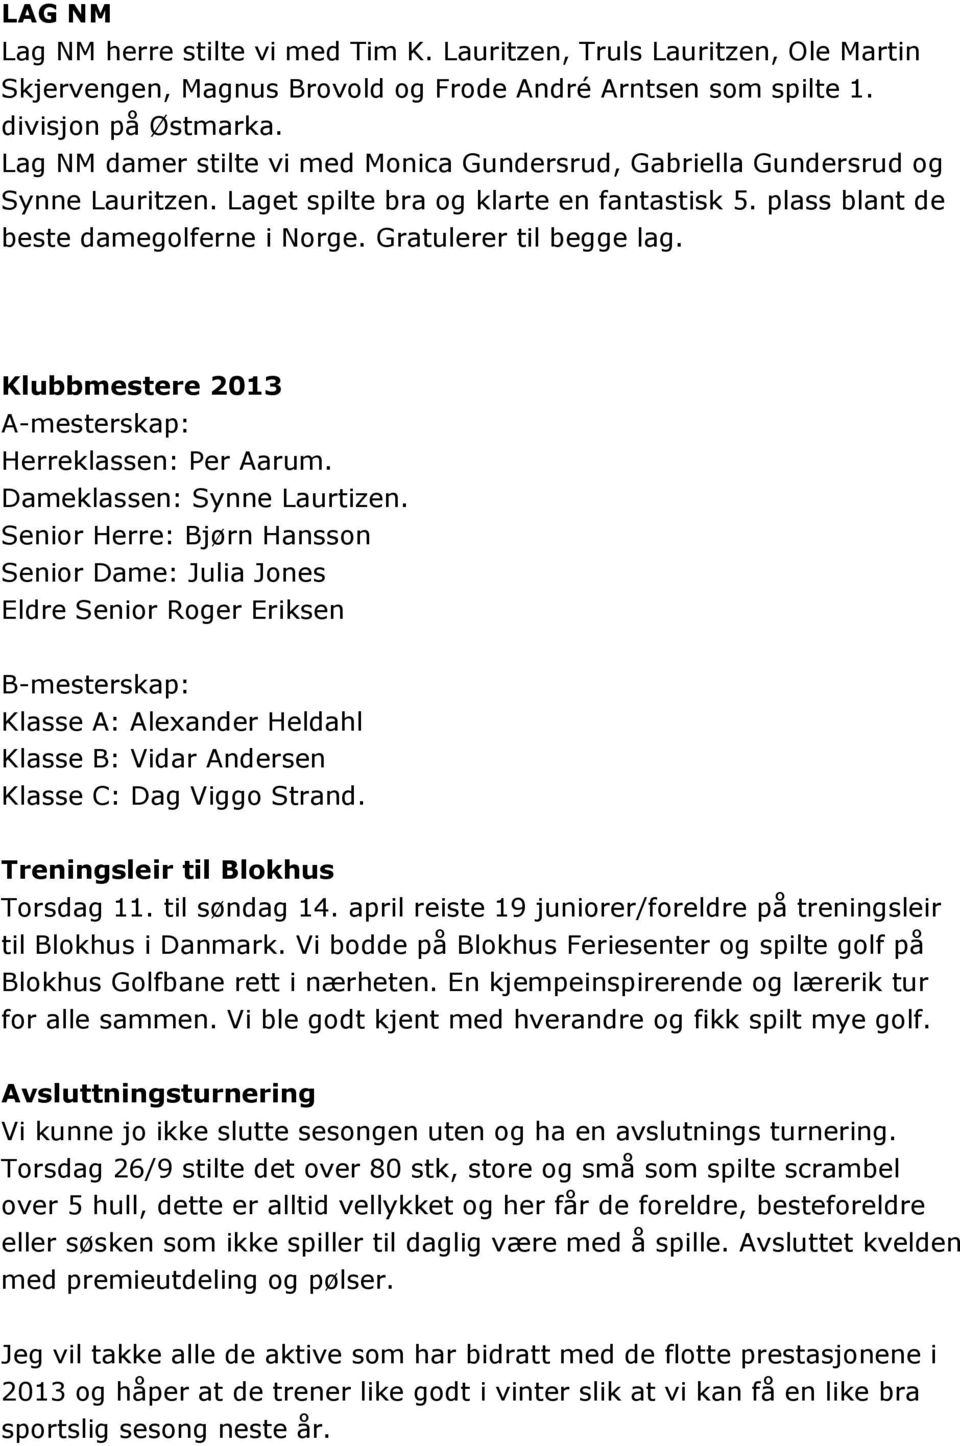 Klubbmestere 2013 A-mesterskap: Herreklassen: Per Aarum. Dameklassen: Synne Laurtizen.